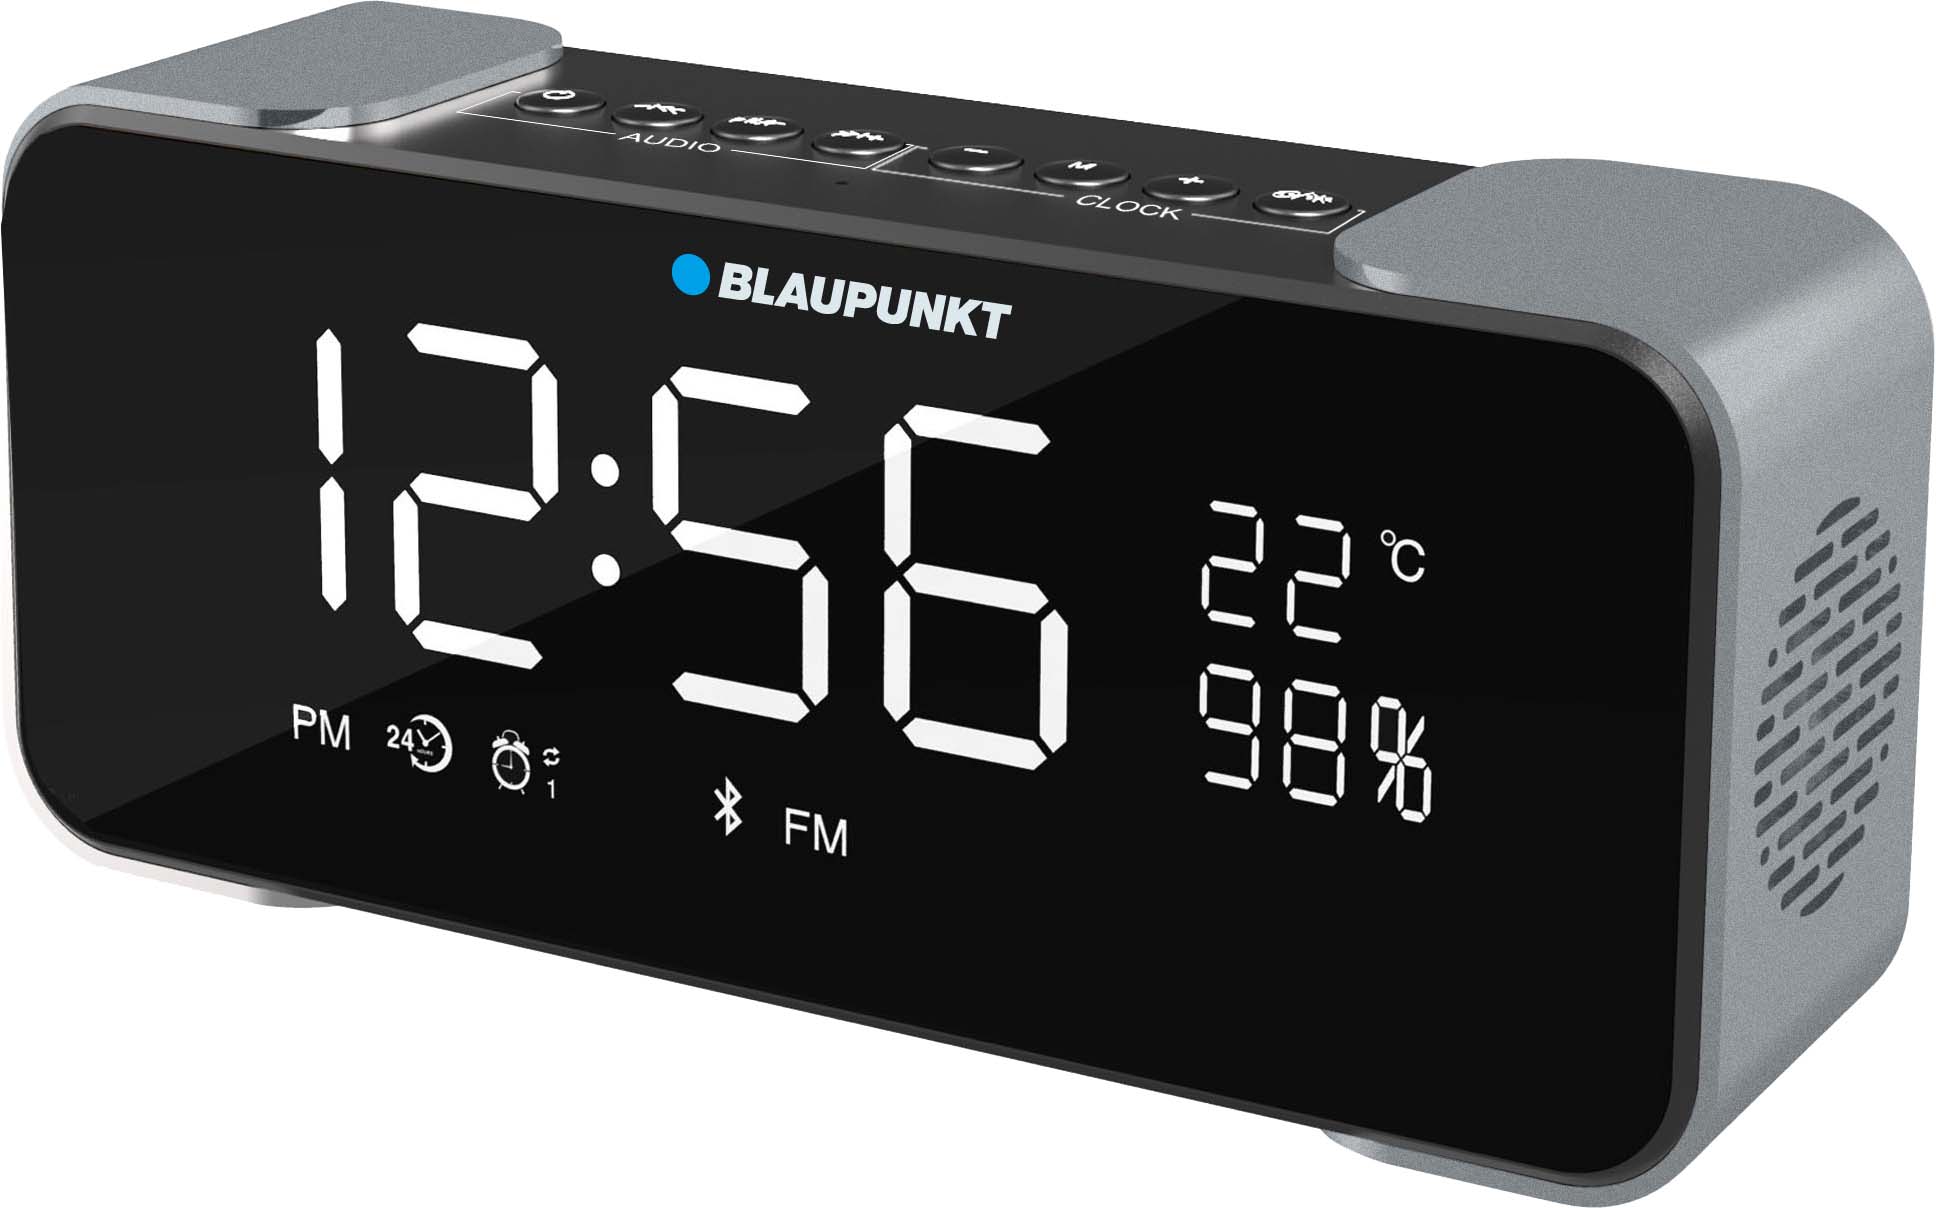 Blaupunkt Blp2400 Radio Despertador Digital Con Bluetooth ( Sd, Aux In, Fm)  Altavoz Inalámbrico, Micrónfono, Función Manos Libres, Batería 2200m Ah,  Alarma